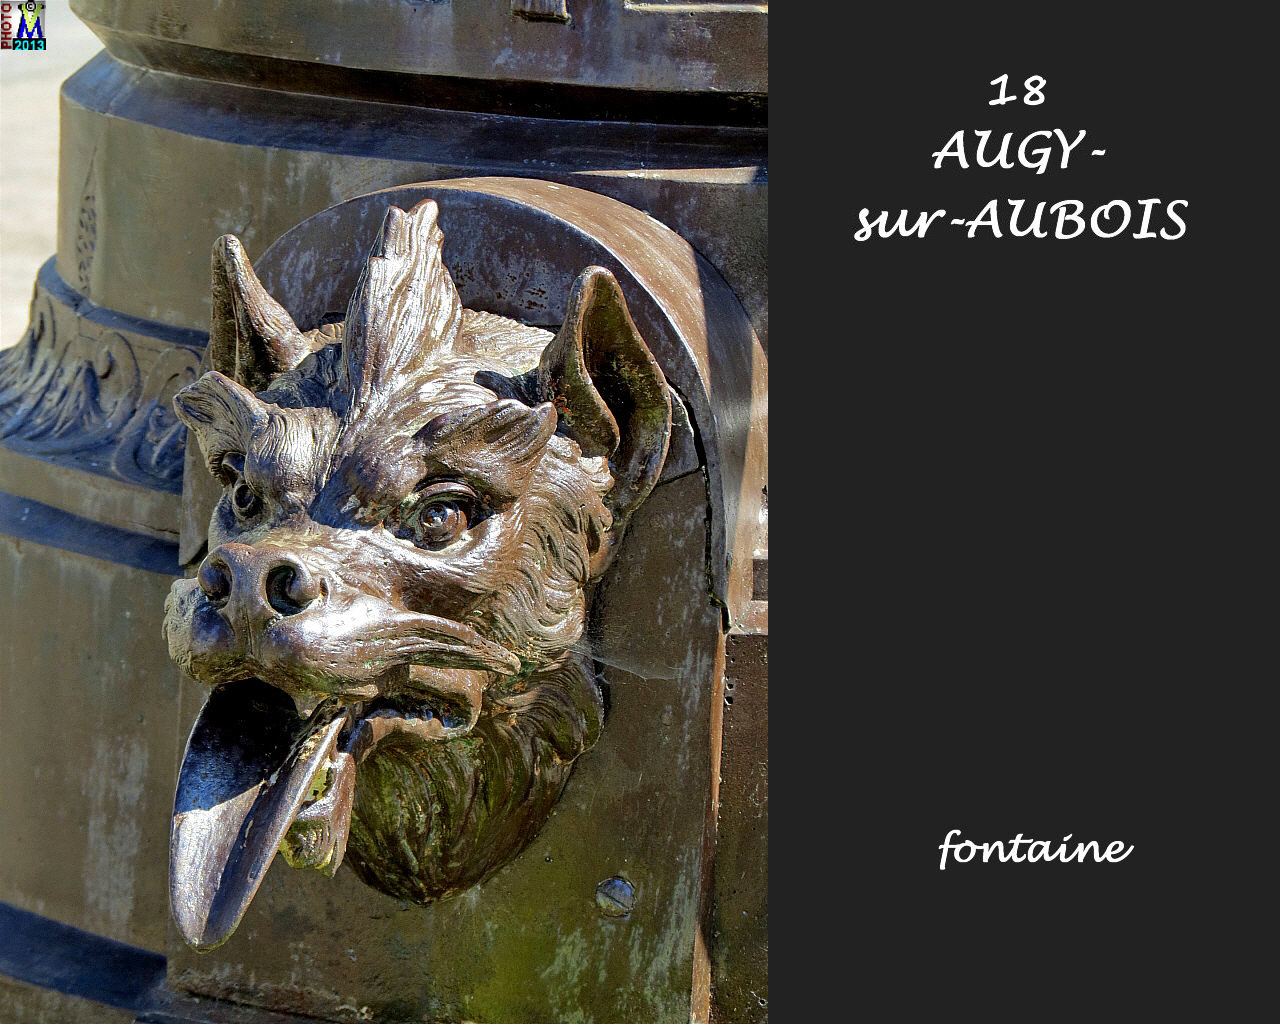 18AUGY-AUBOIS_fontaine_102.jpg